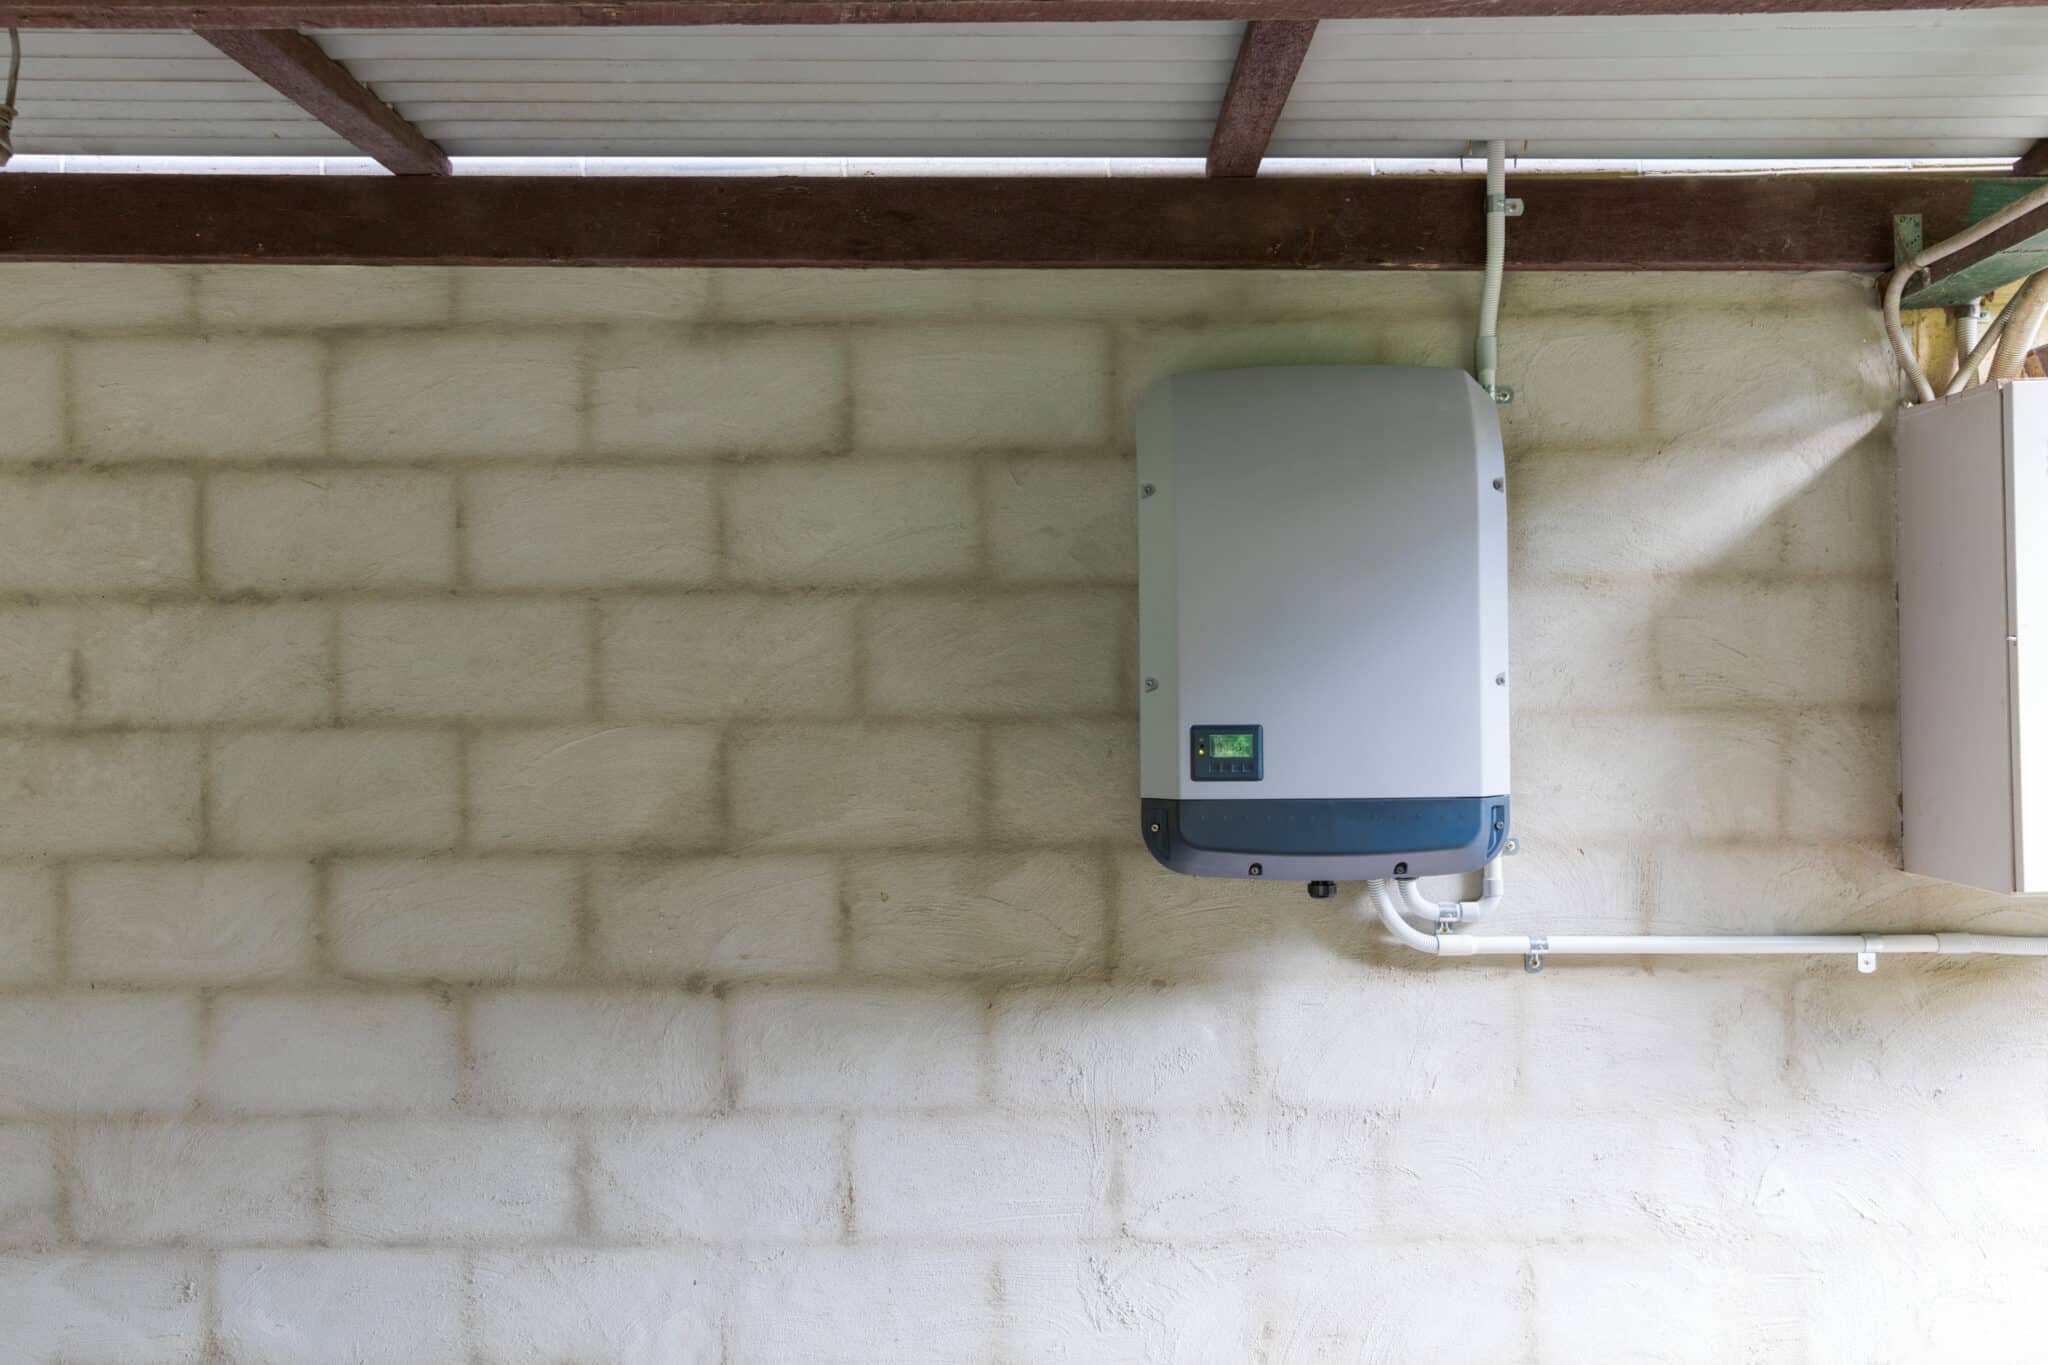 solar power inverter installed in a garage